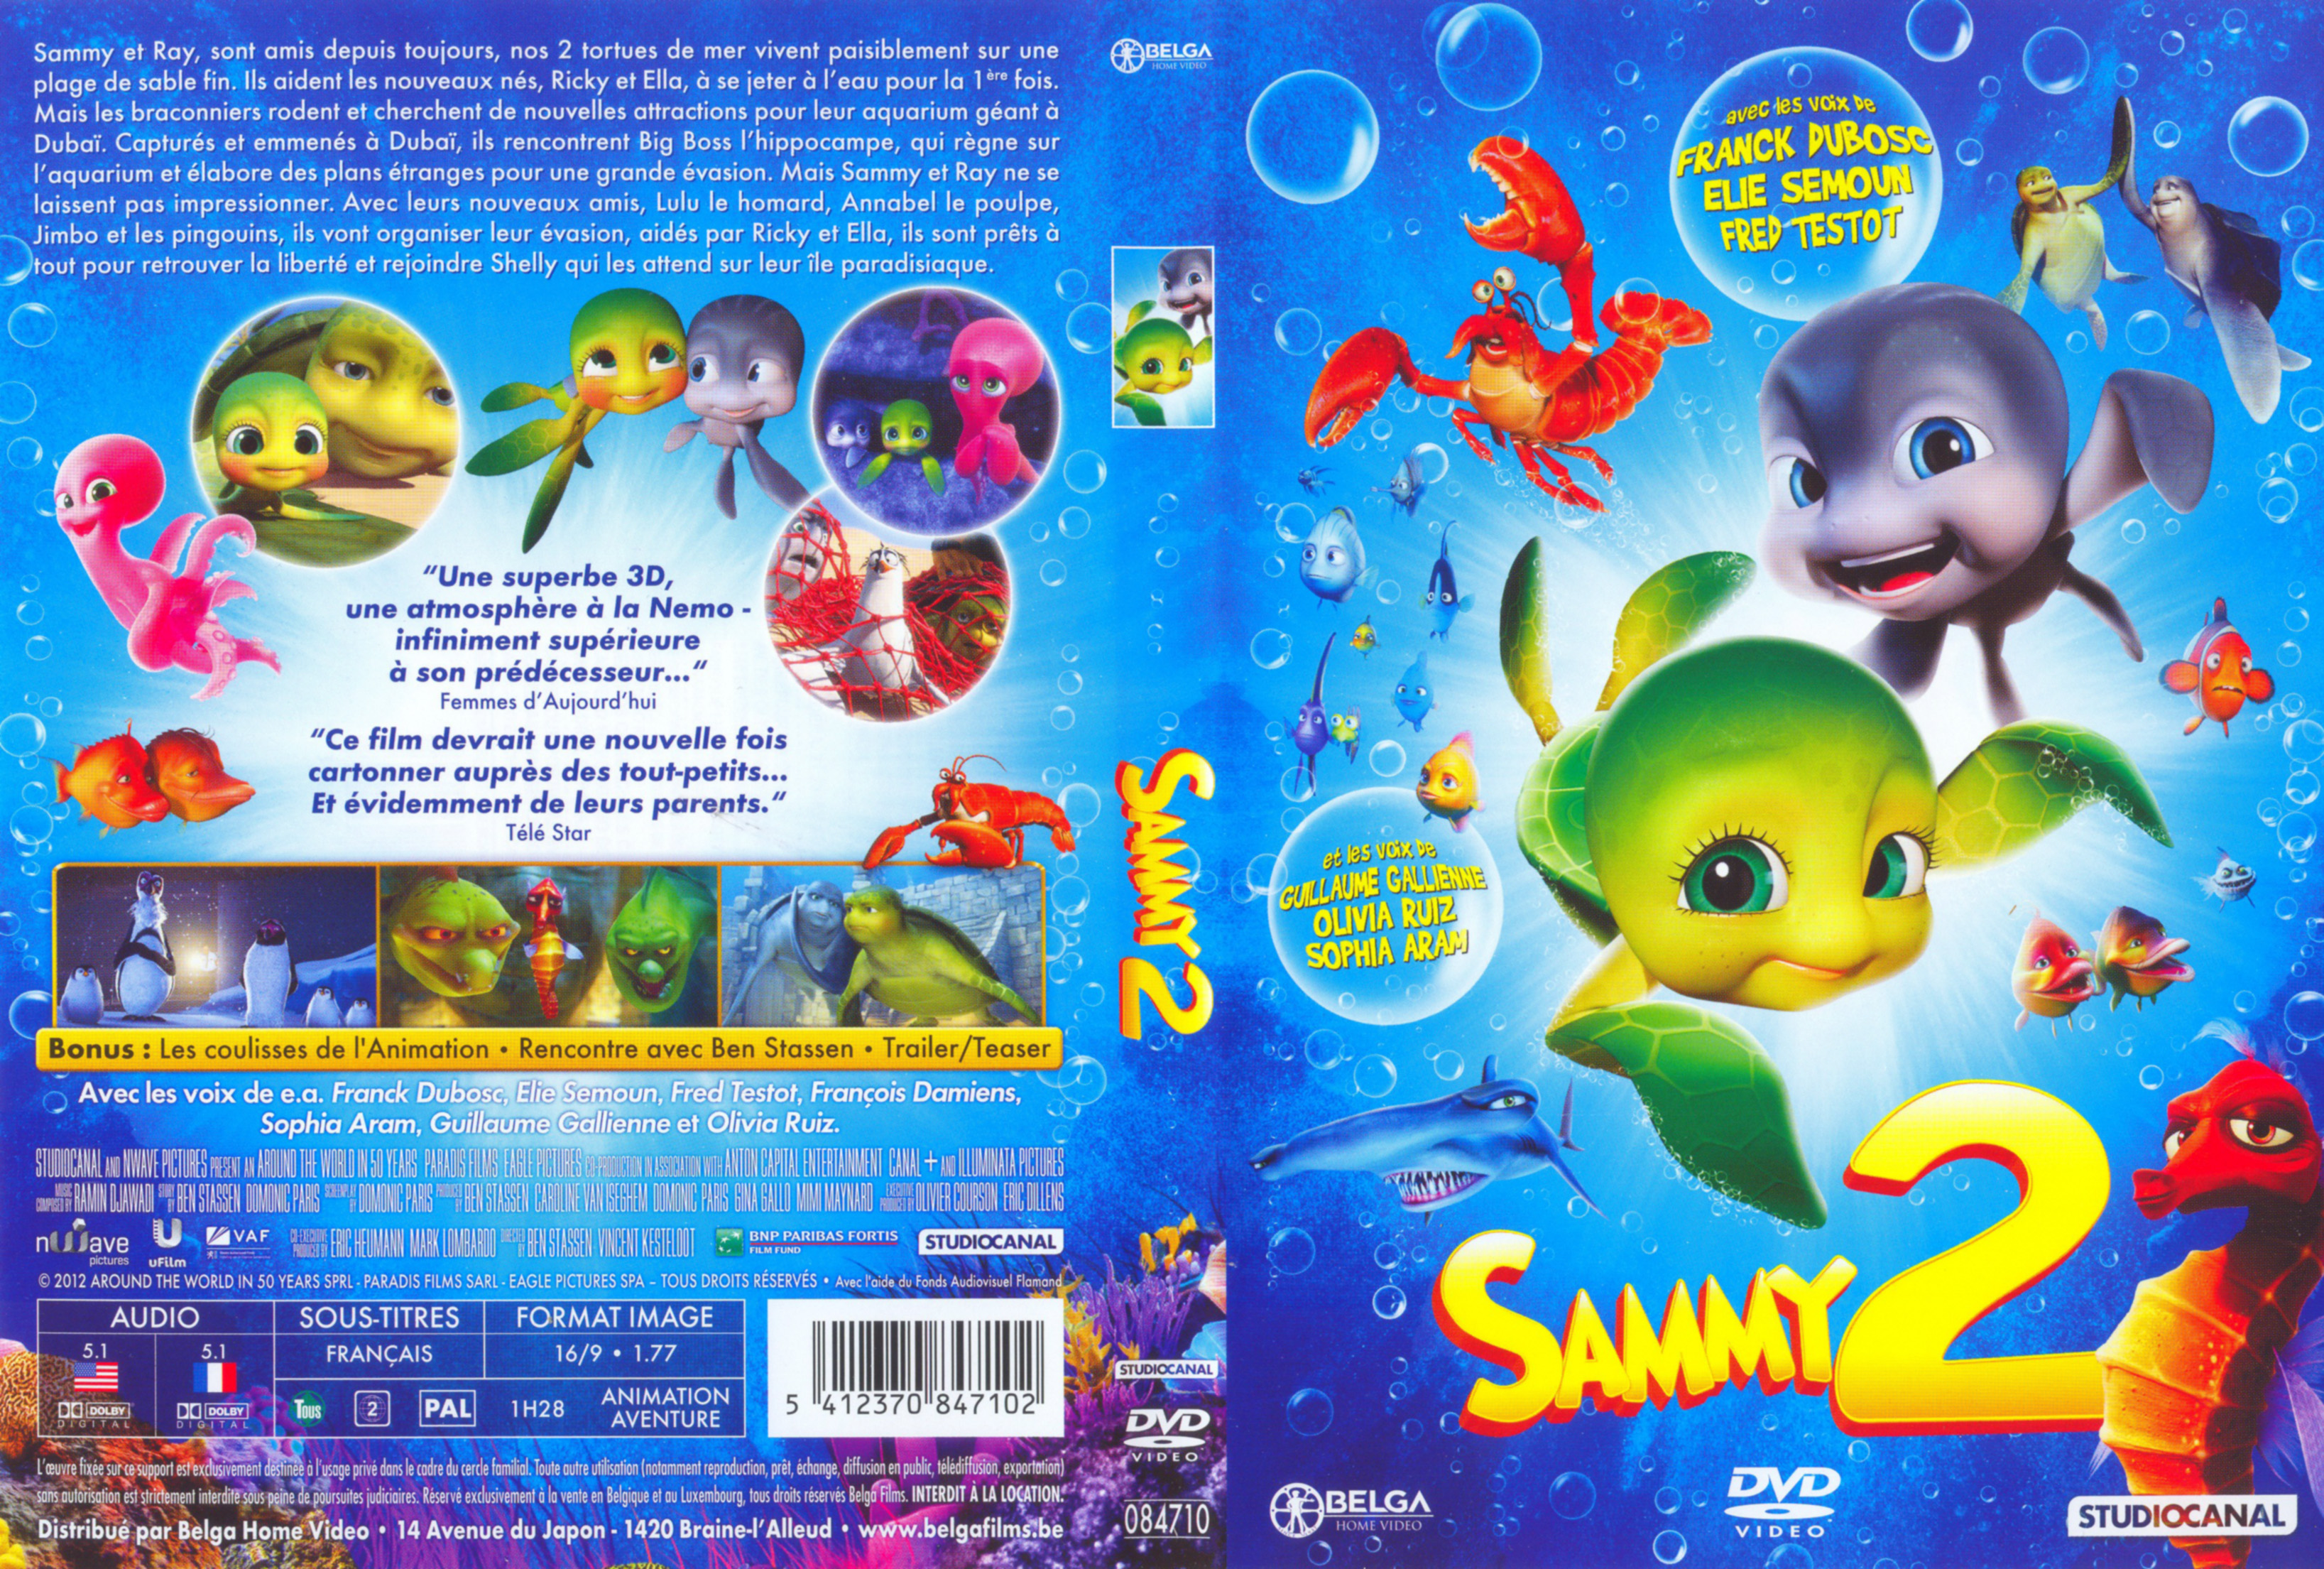 Jaquette DVD Sammy 2